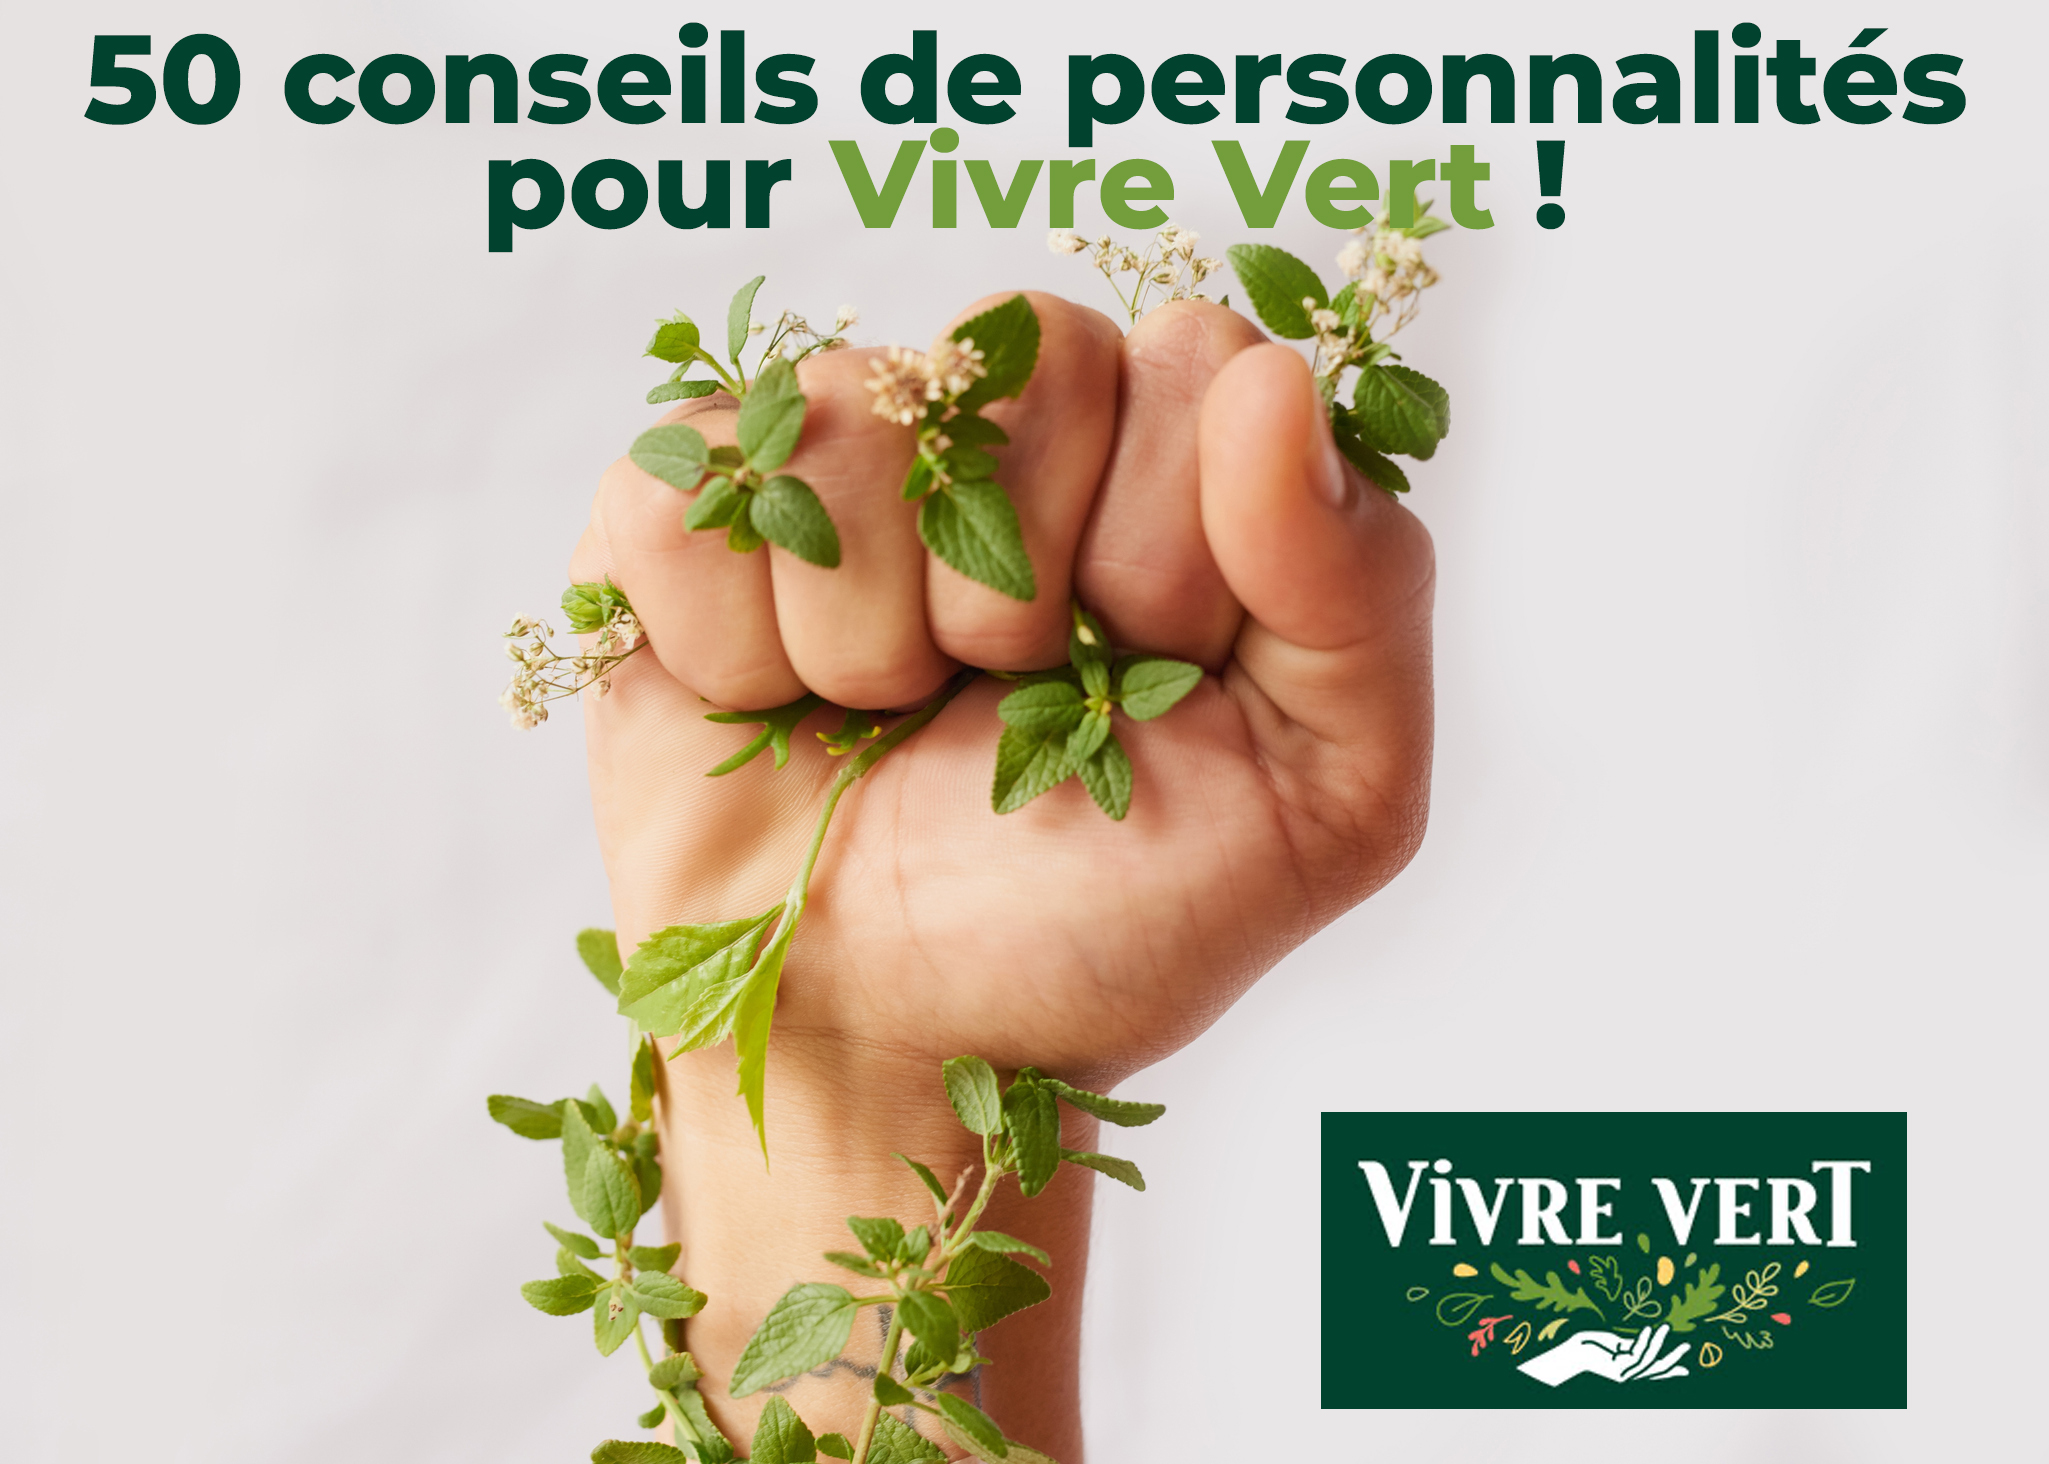 vivre vert - Livre blanc “50 conseils de personnalités pour Vivre Vert !”